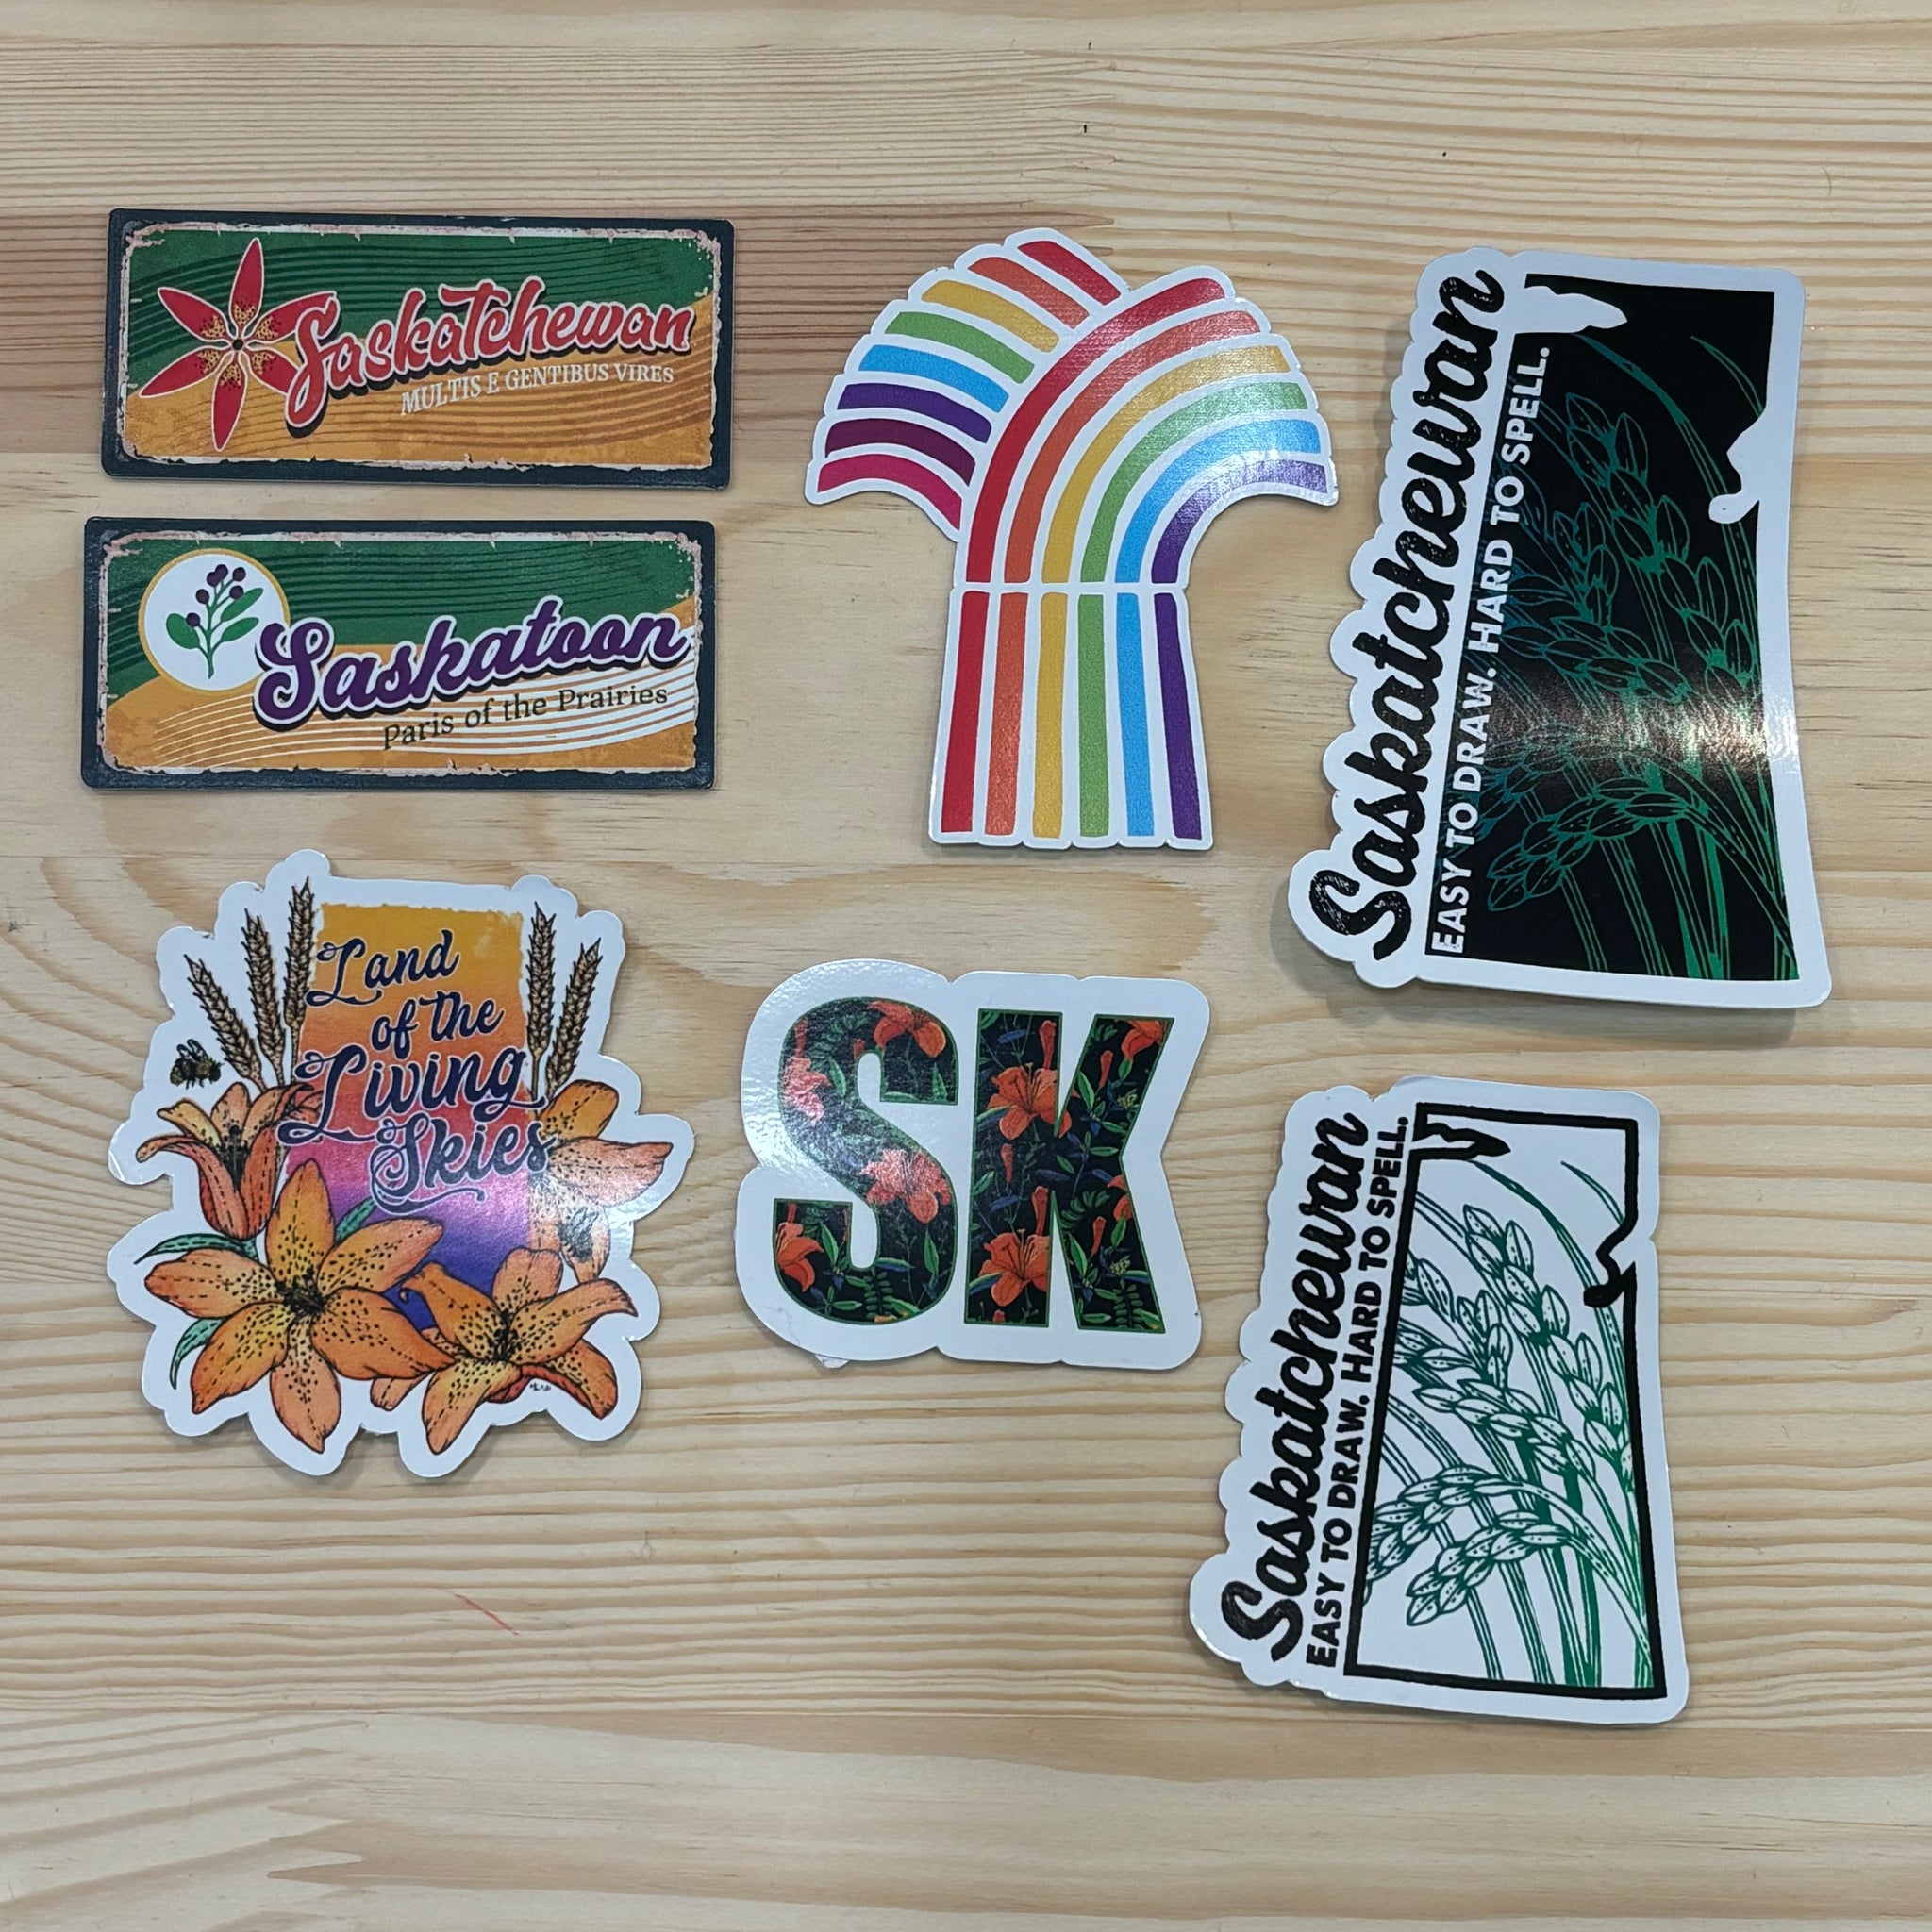 Saskatchewan Stickers